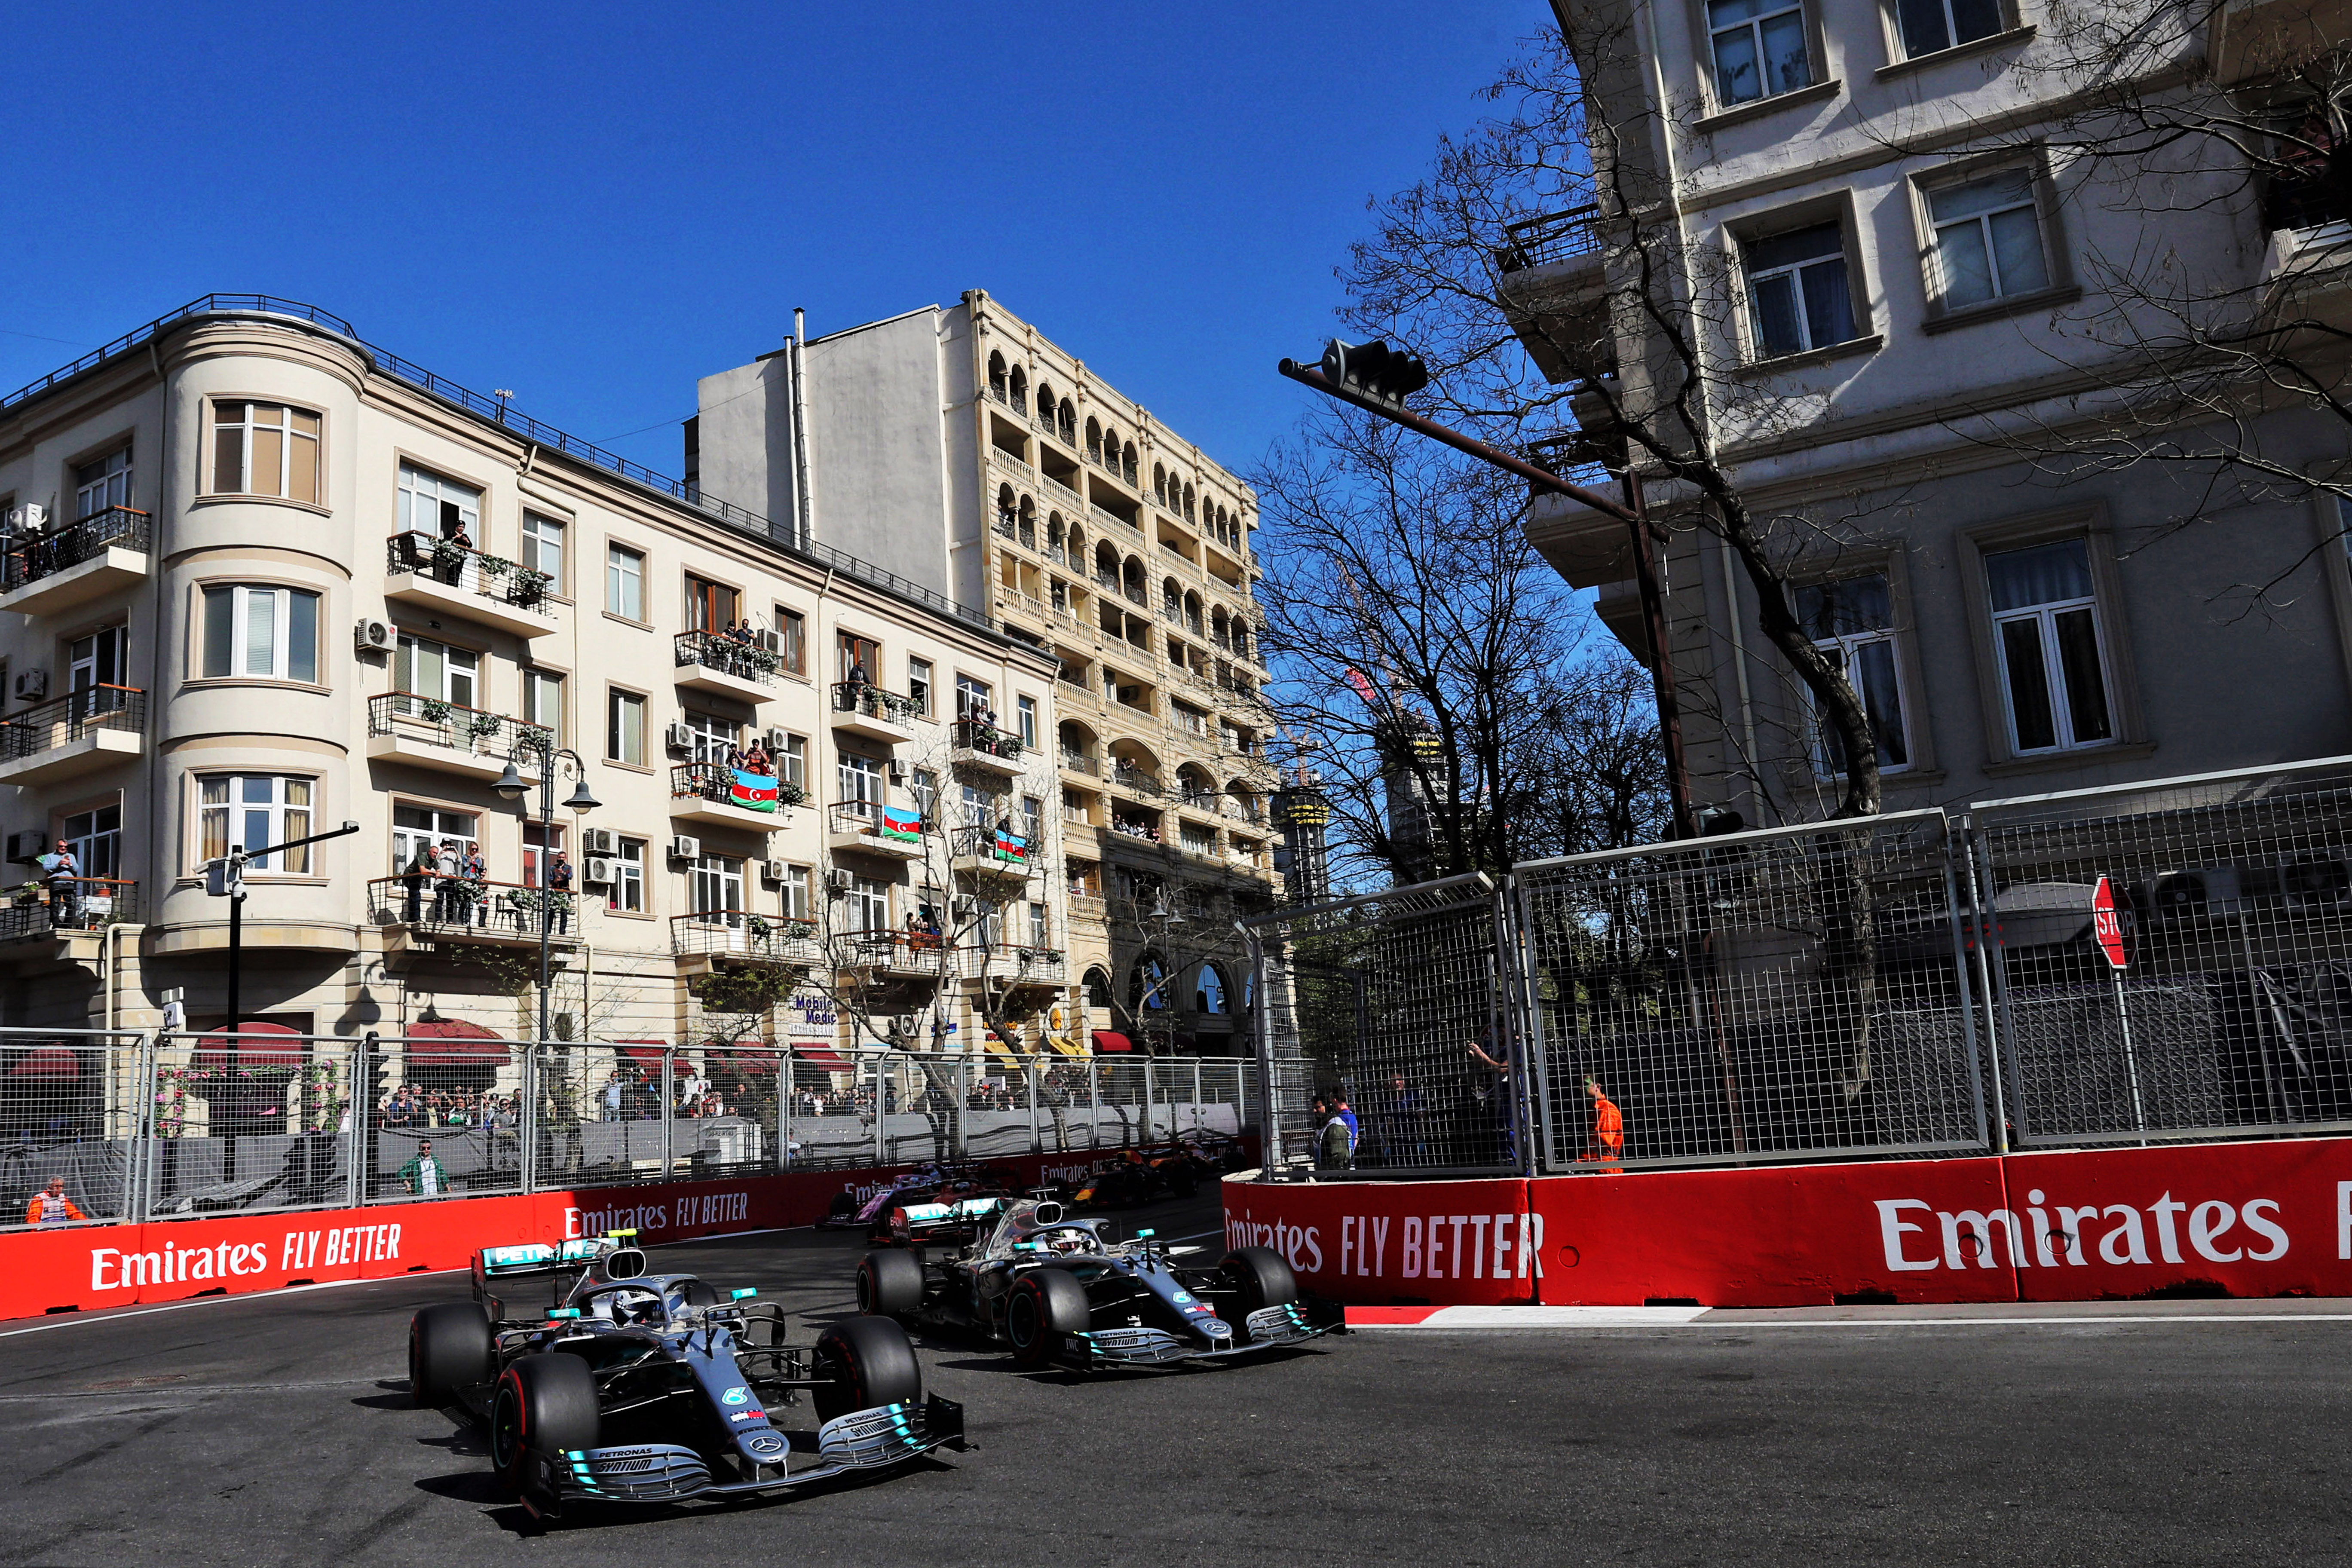 Valtteri Bottas Lewis Hamilton Azerbaijan Grand Prix 2019